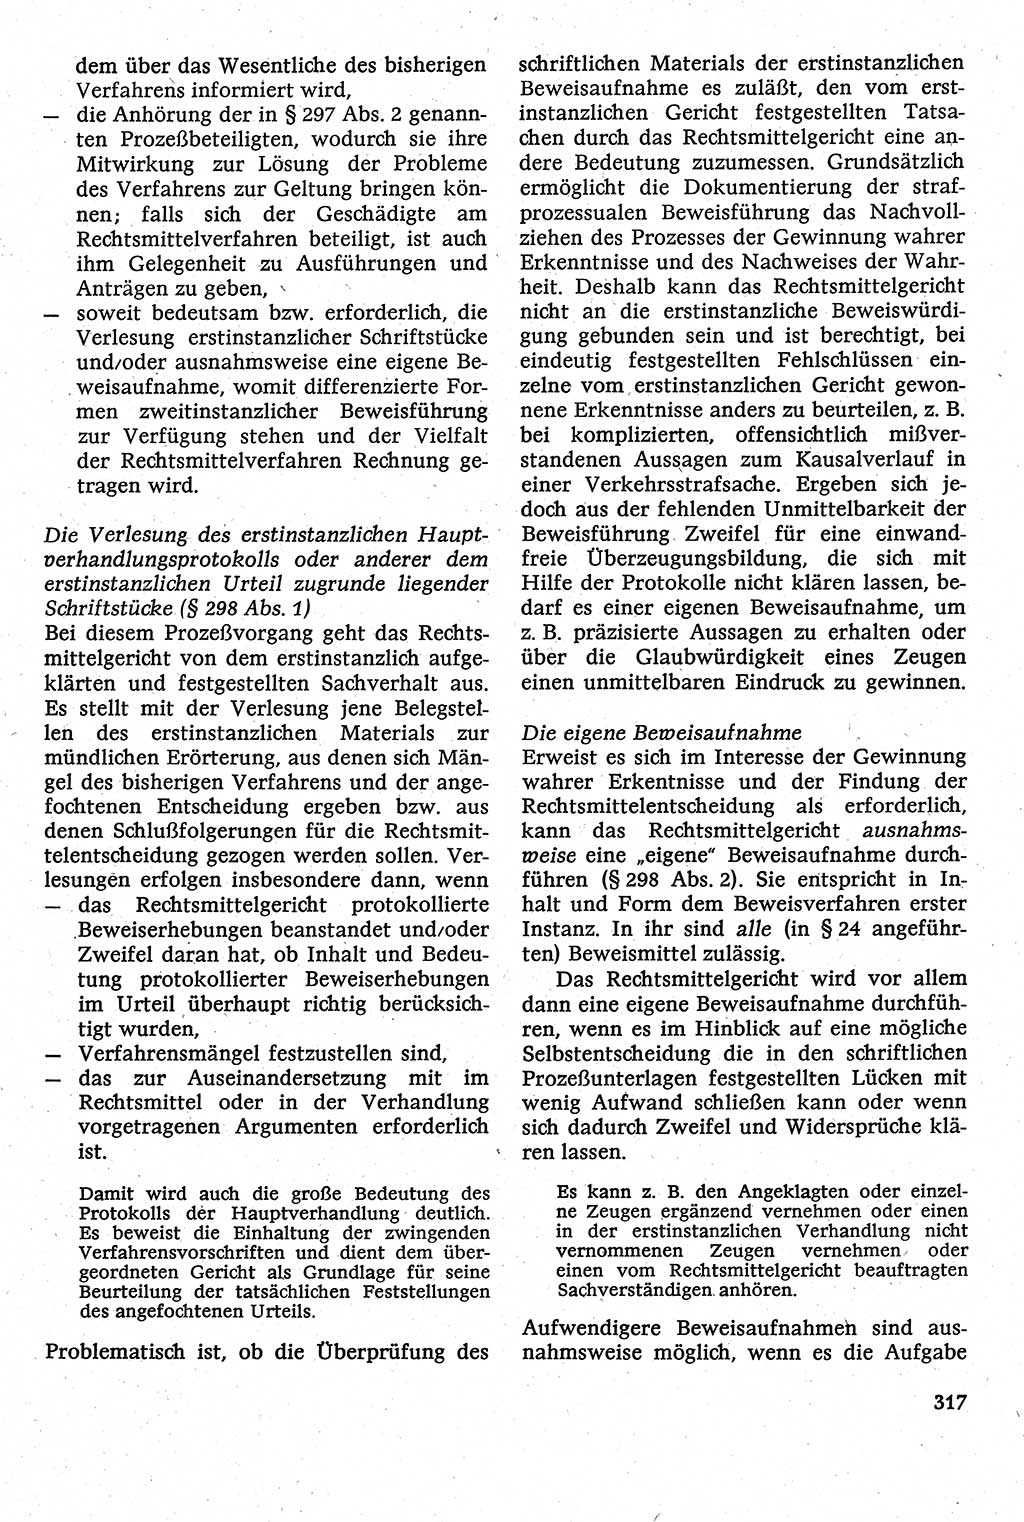 Strafverfahrensrecht [Deutsche Demokratische Republik (DDR)], Lehrbuch 1982, Seite 317 (Strafverf.-R. DDR Lb. 1982, S. 317)